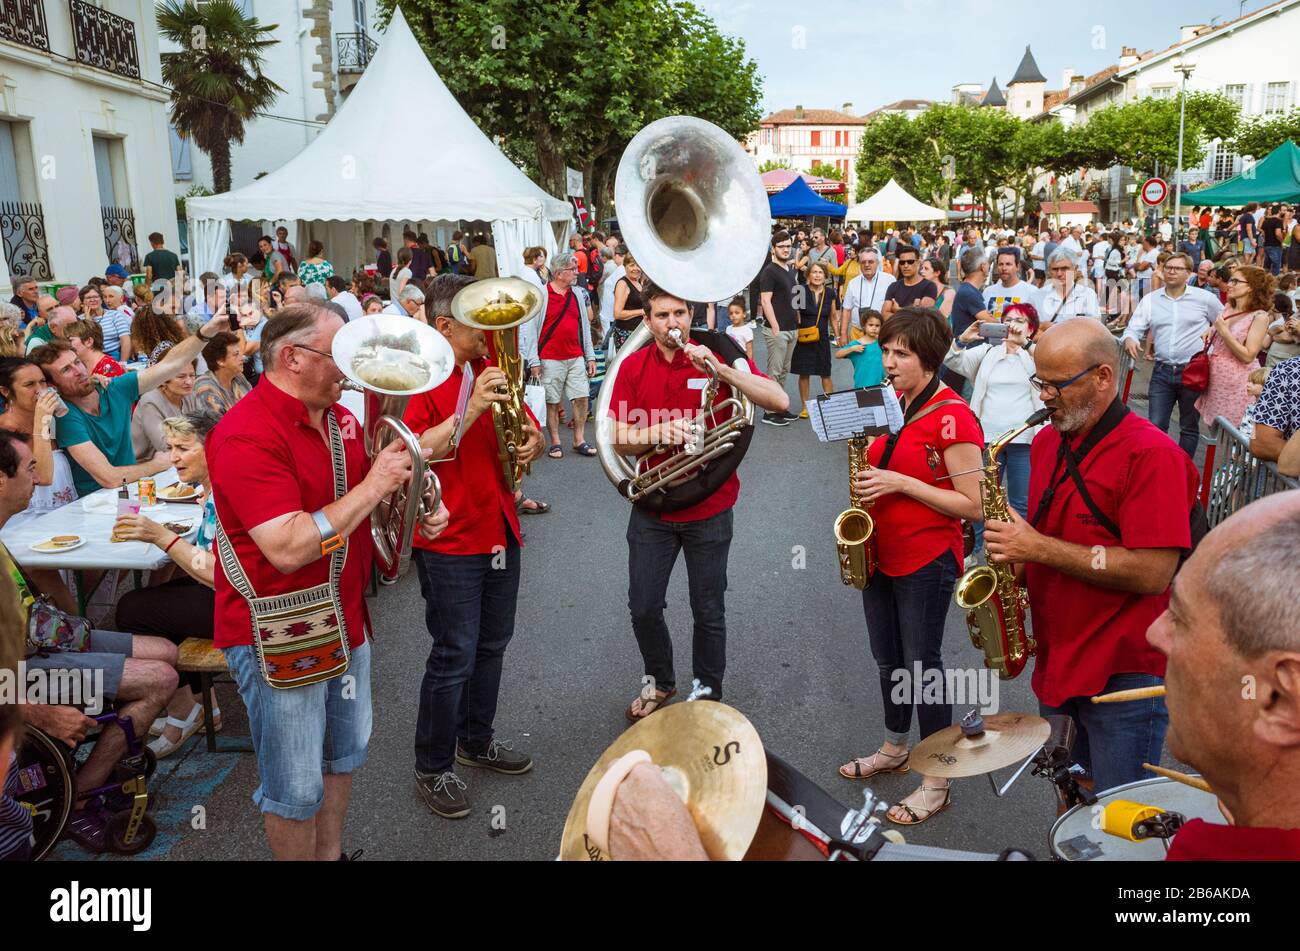 Saint Jean de Luz, französisches Baskenland, Frankreich - 13. Juli 2019: EINE traditionelle Musikertruppe wird während der Celebrati auf Dem Place Louis XVI auftreten Stockfoto